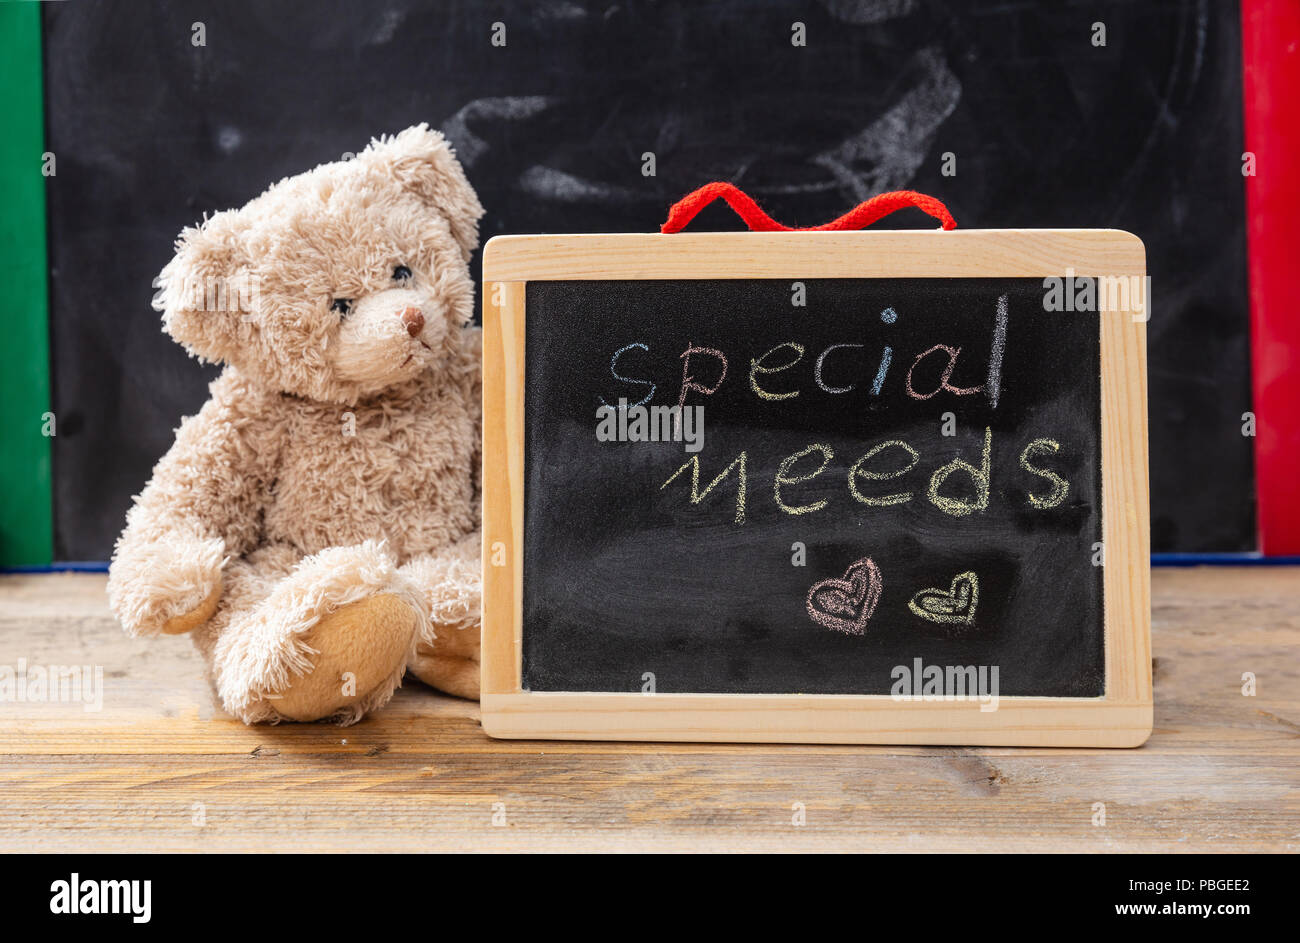 Besondere Bedürfnisse in der Schule. Teddybär hinter einer Tafel versteckt. Besondere Bedürfnisse text Zeichnung an der Tafel Stockfoto